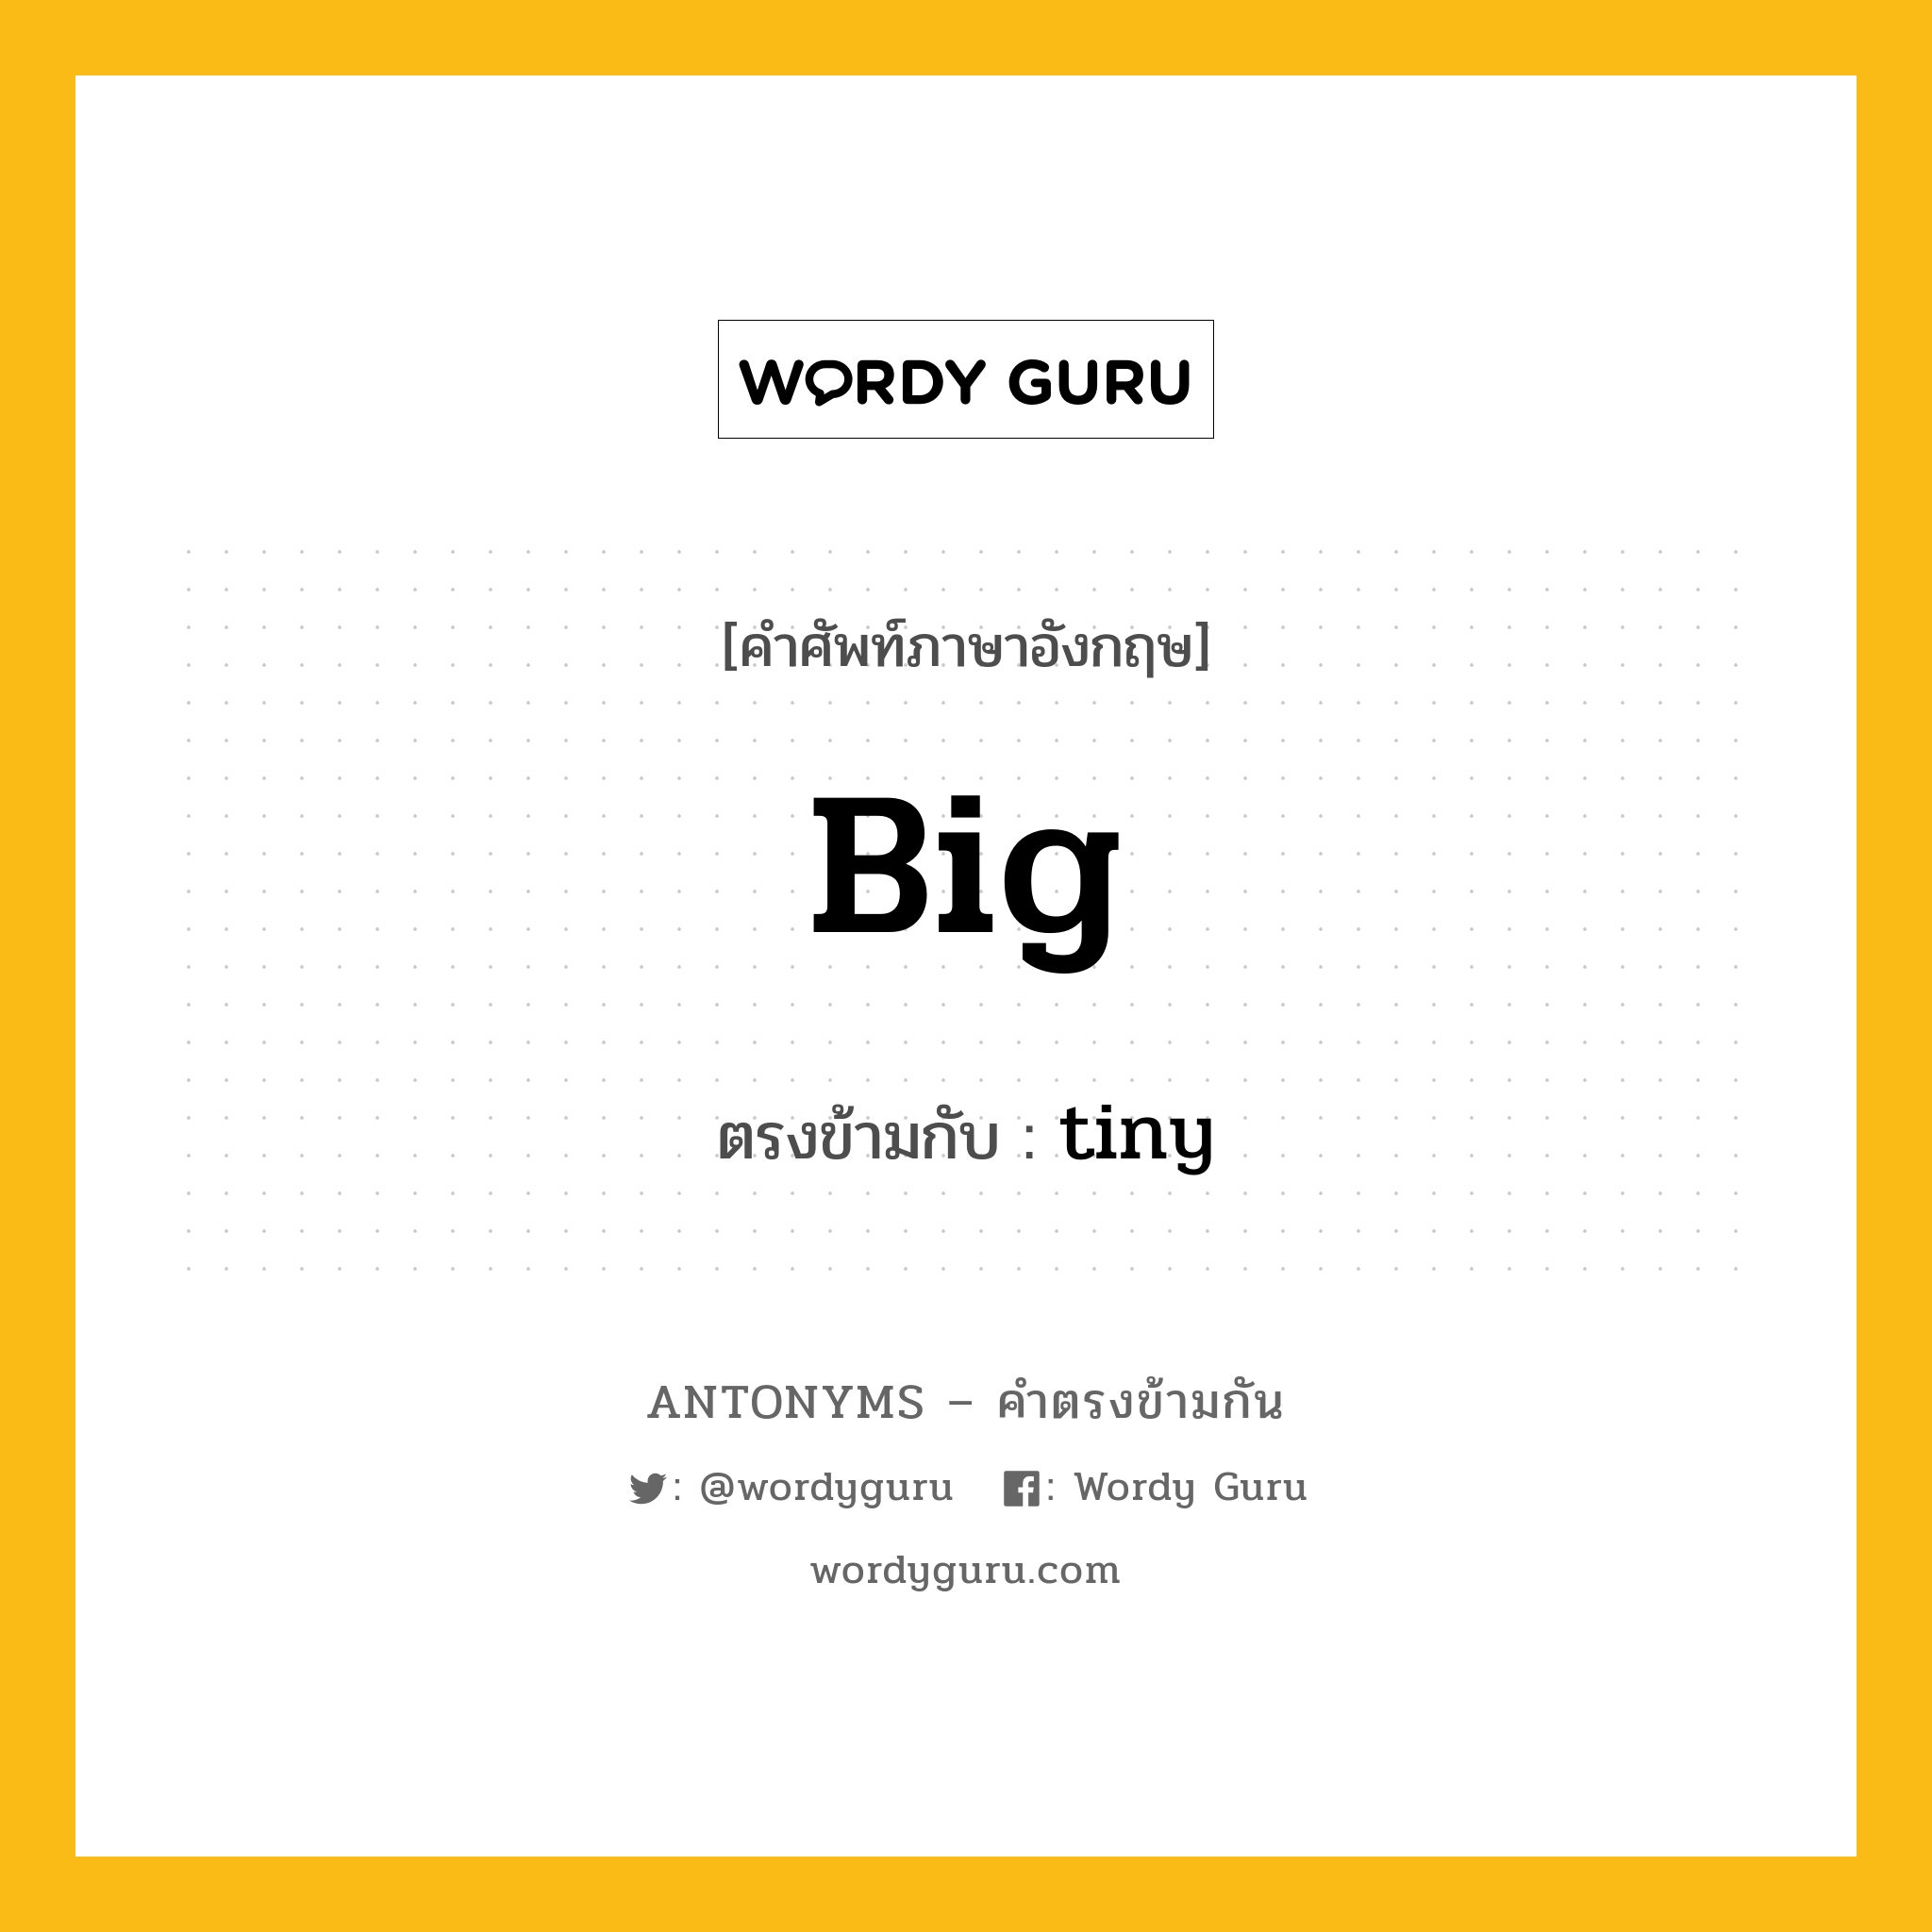 big เป็นคำตรงข้ามกับคำไหนบ้าง?, คำศัพท์ภาษาอังกฤษ big ตรงข้ามกับ tiny หมวด tiny